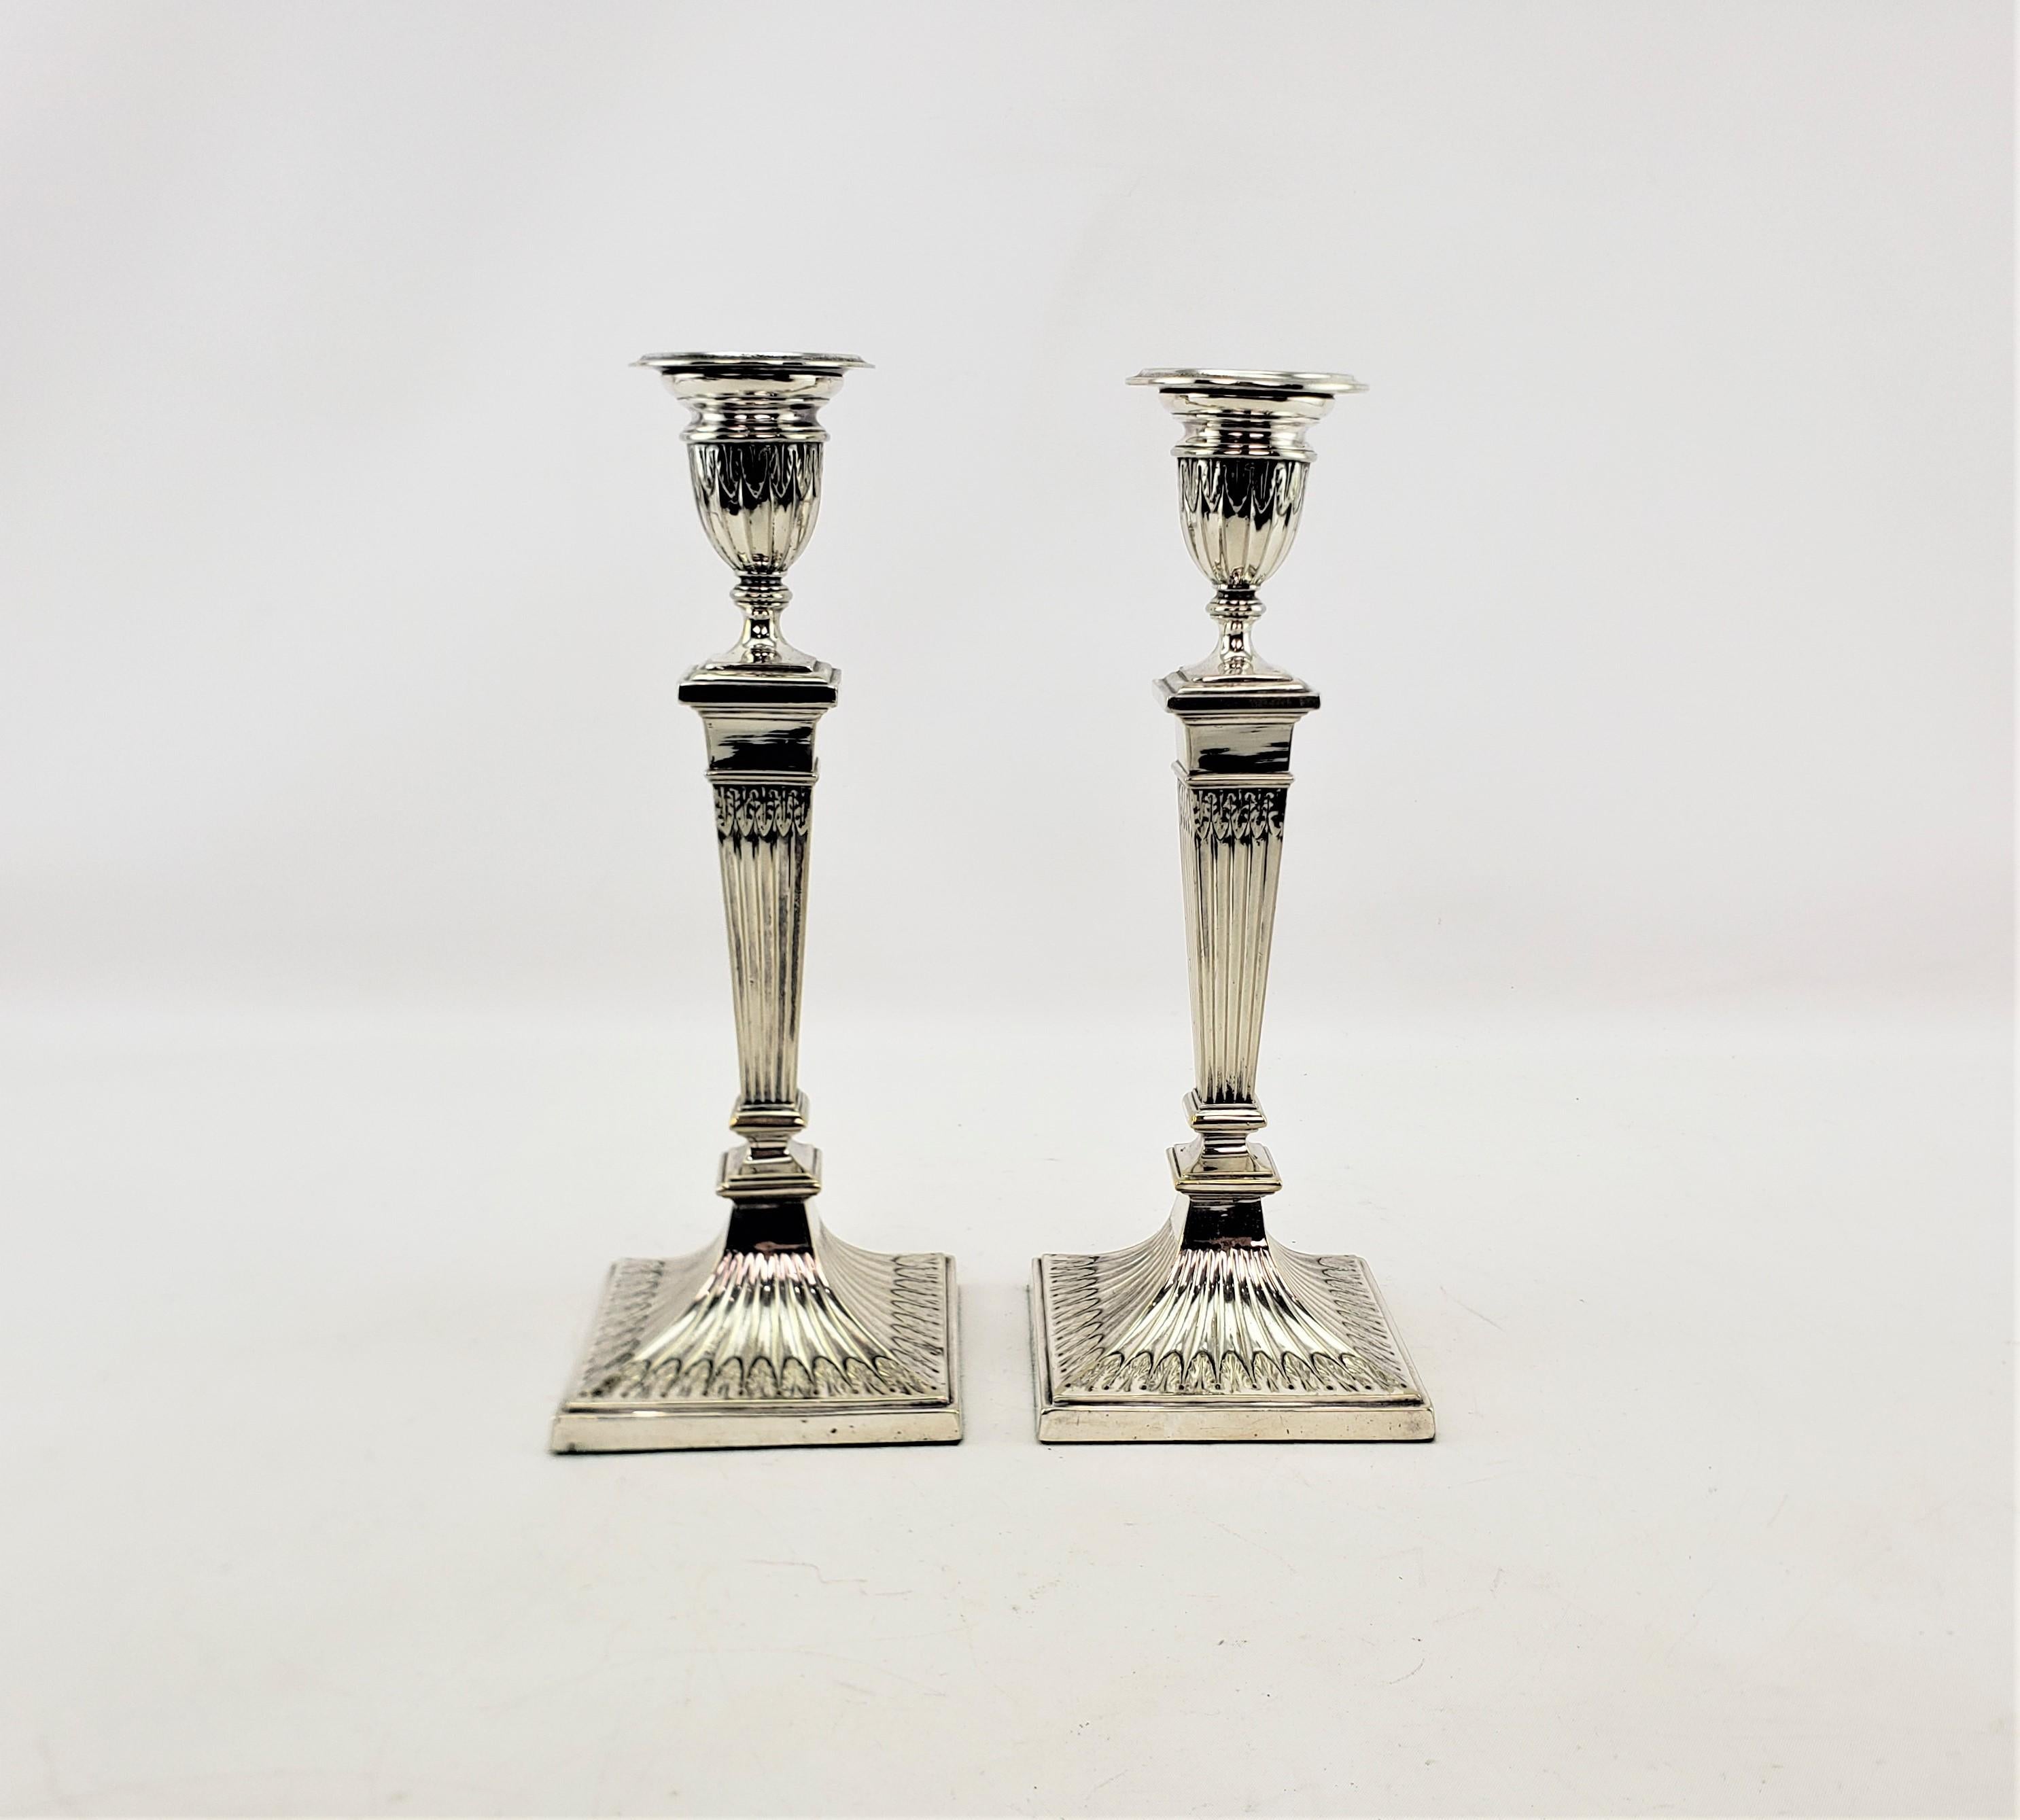 Dieses Paar antiker Kerzenständer wurde von der bekannten englischen Firma Elkington um 1920 im Stil des Art déco hergestellt. Die Knicklichter bestehen aus Silberblech und sind an den Seiten der Becher mit stilisierten Blättern verziert, die sich